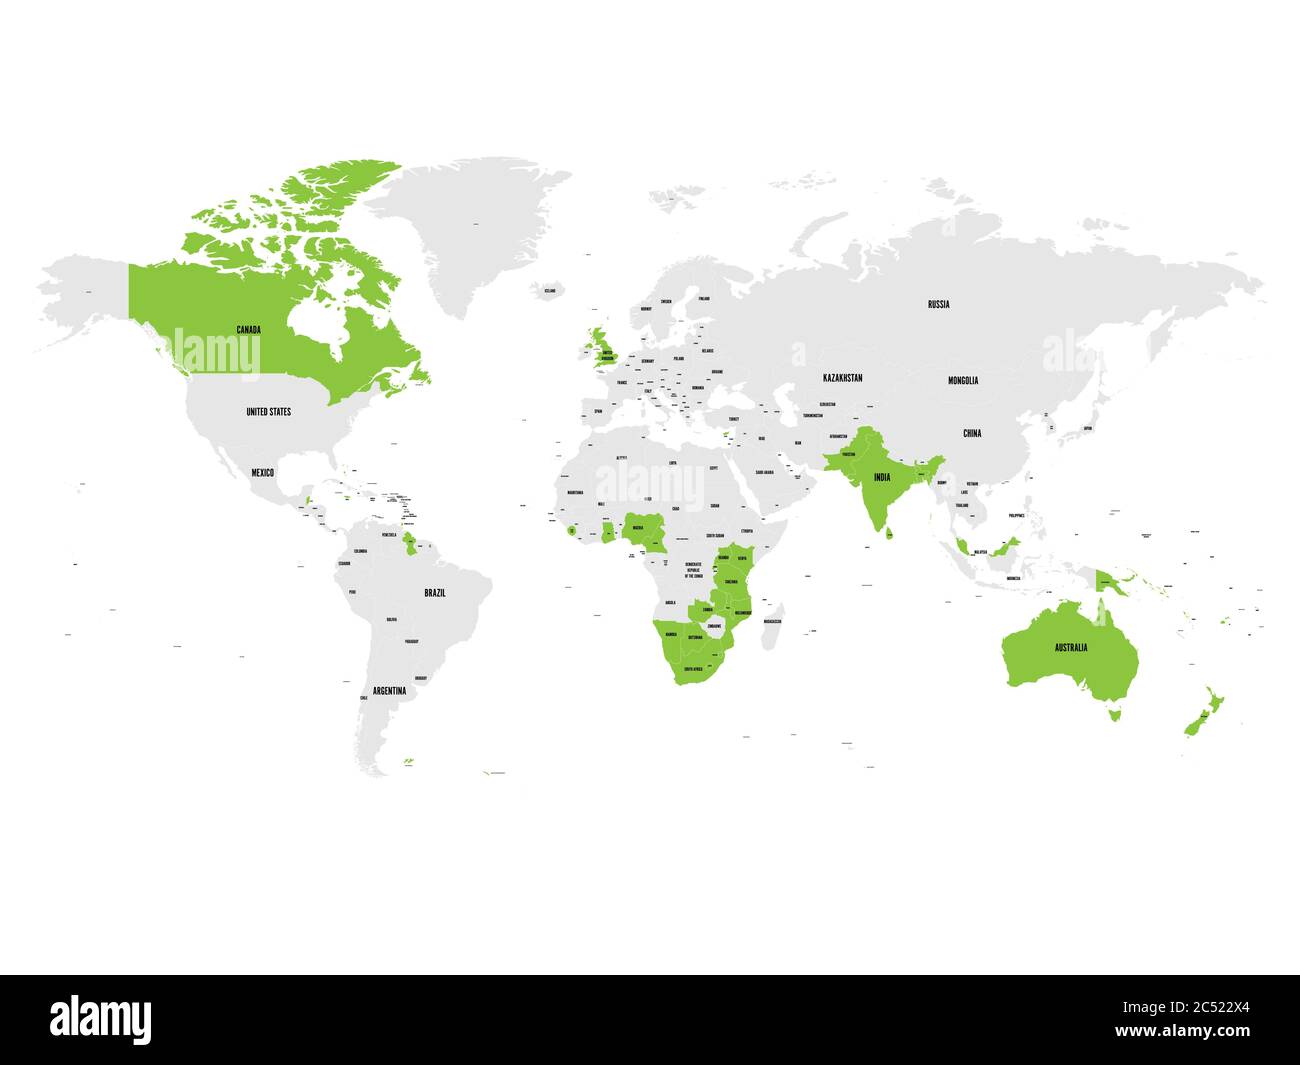 Mitgliedstaaten des britischen Commonwealth grün in der Weltkarte hervorgehoben. Vektorgrafik. Stock Vektor